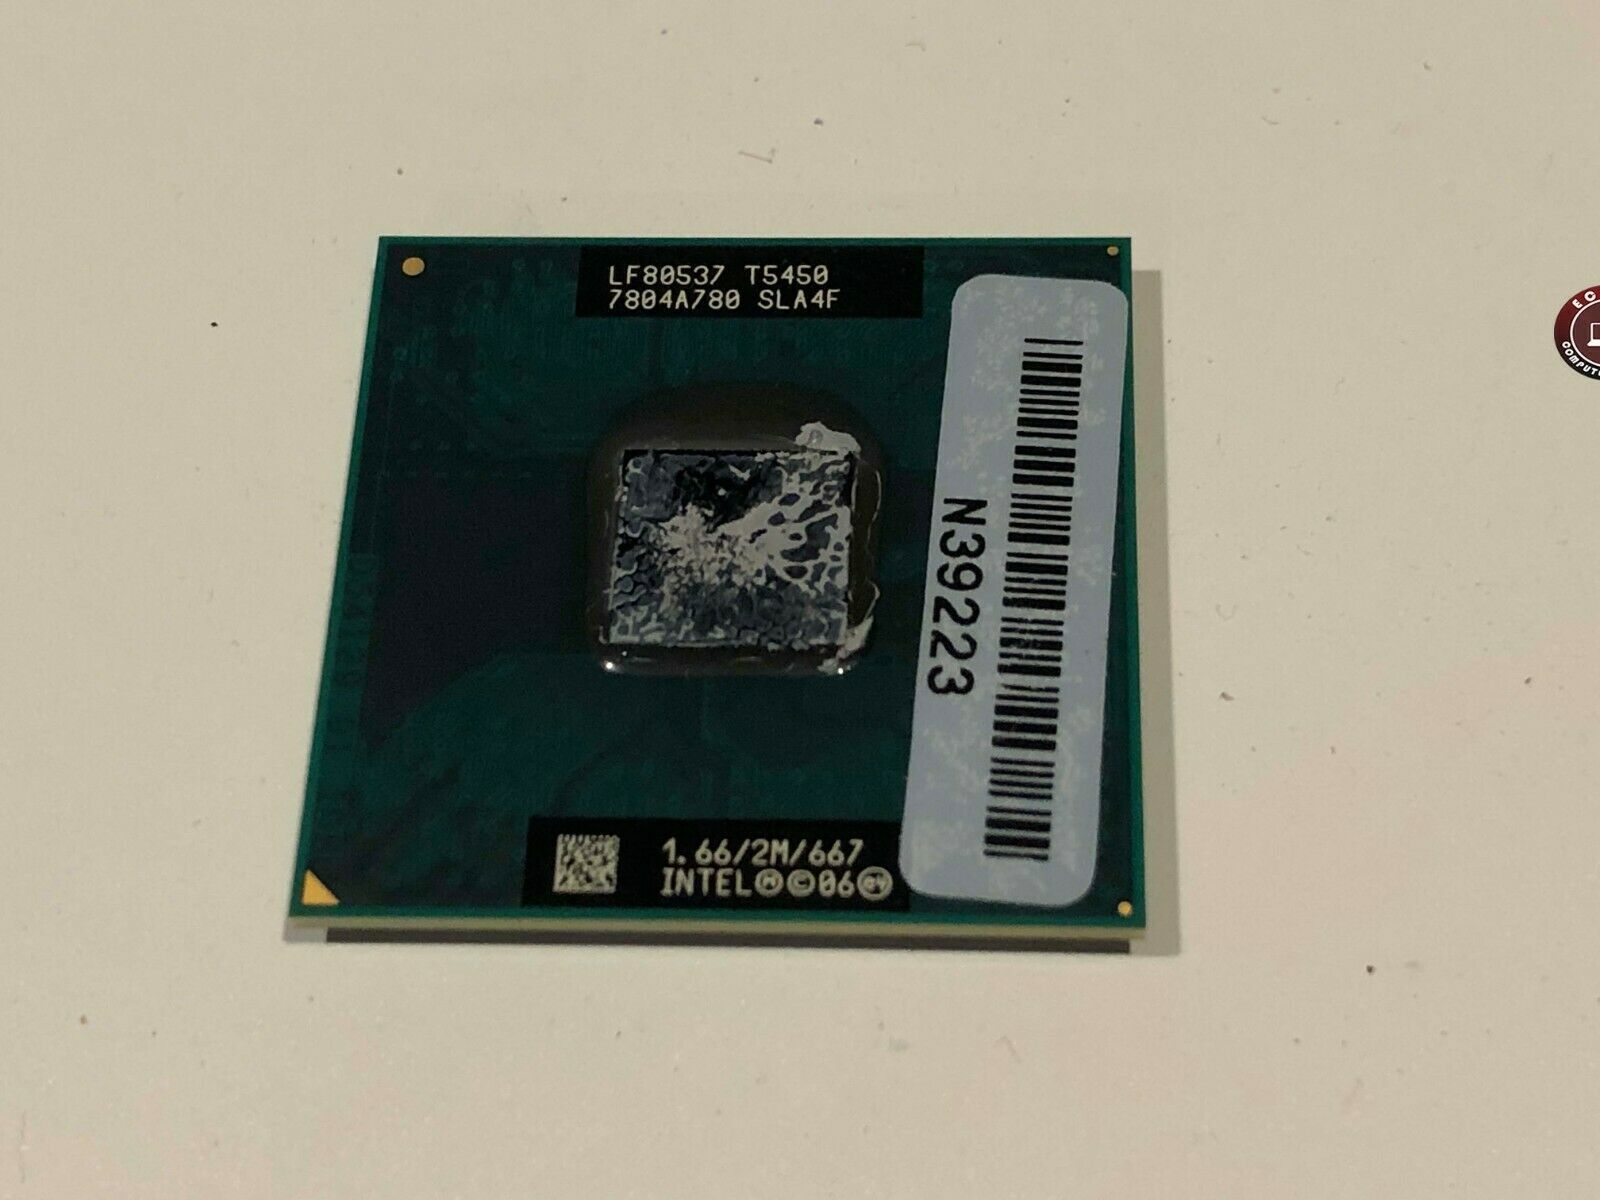 Notebook FL92 Intel Core 2 Duo T5450 1.66 GHz Laptop CPU SLA4F - $3.36